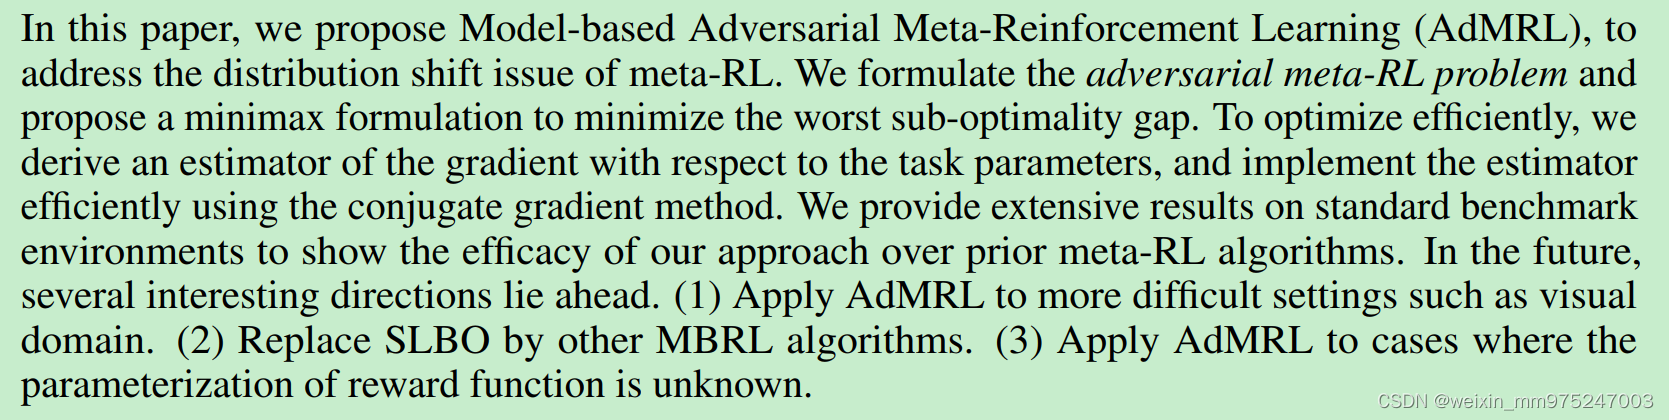 论文学习—Model-based Adversarial Meta-Reinforcement Learning